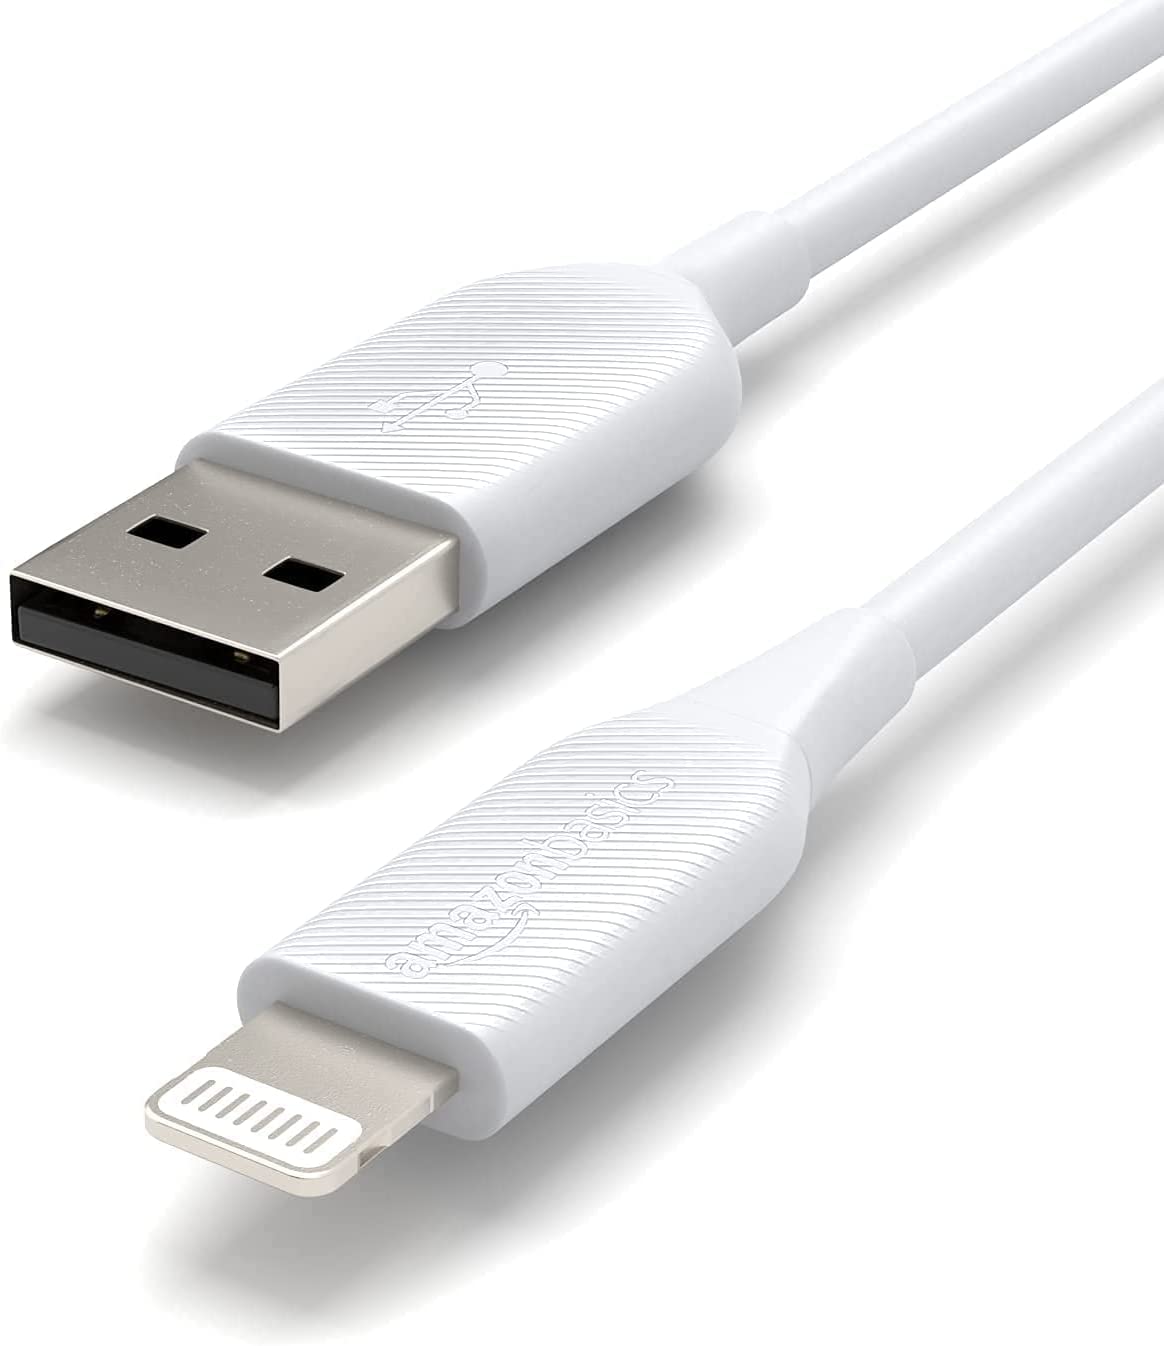 [3美國直購] AmazonBasics USB 轉 Lightning iPhone 充電線 90公分x2條 MFi認證線 適 蘋果 Apple iPad